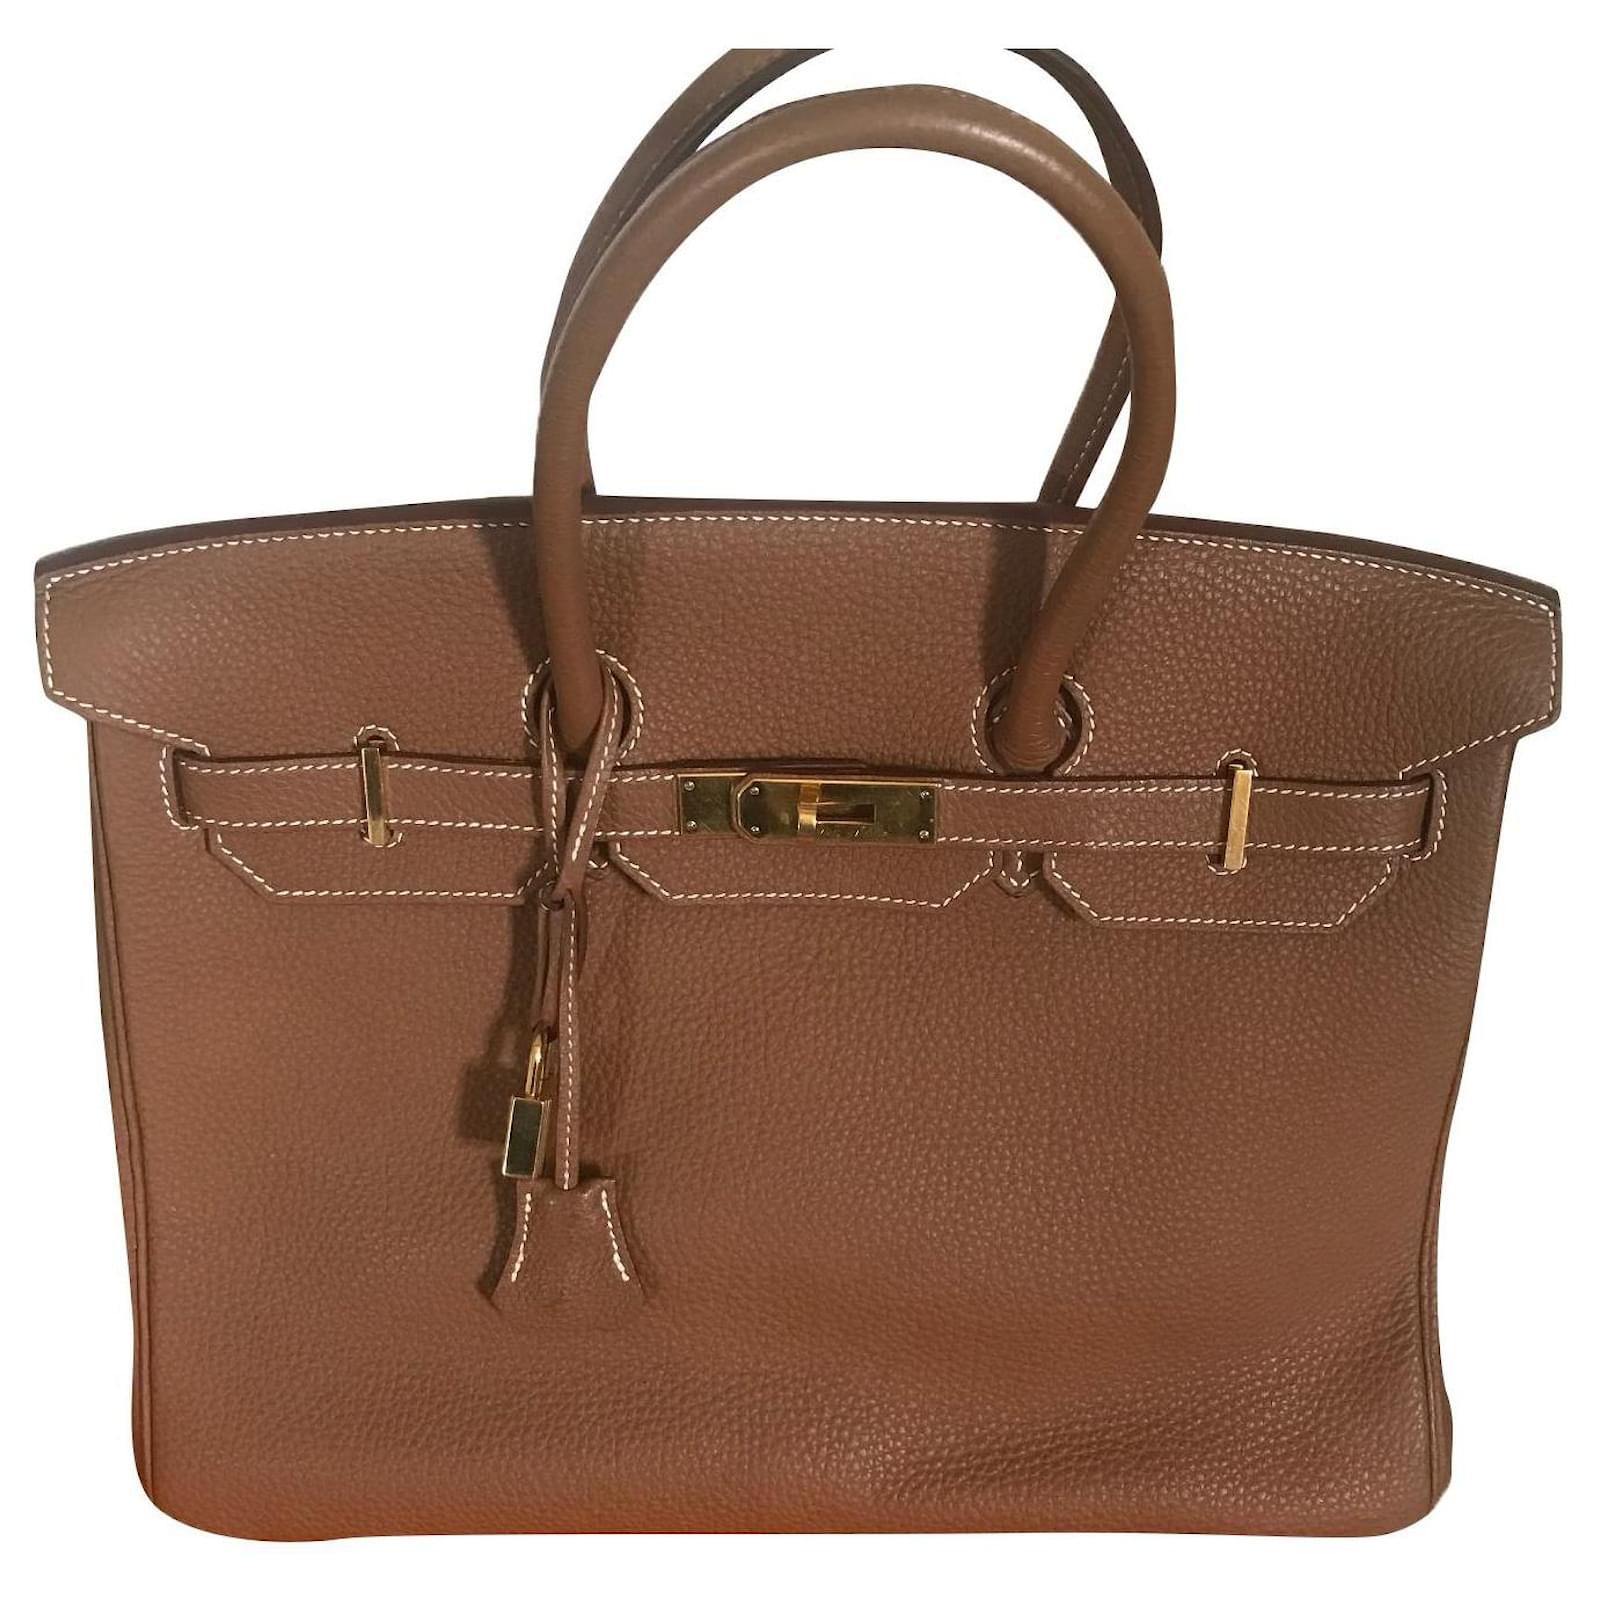 Hermes Birkin 35 Gold Togo Gold Hardware Handbag Purse in Box